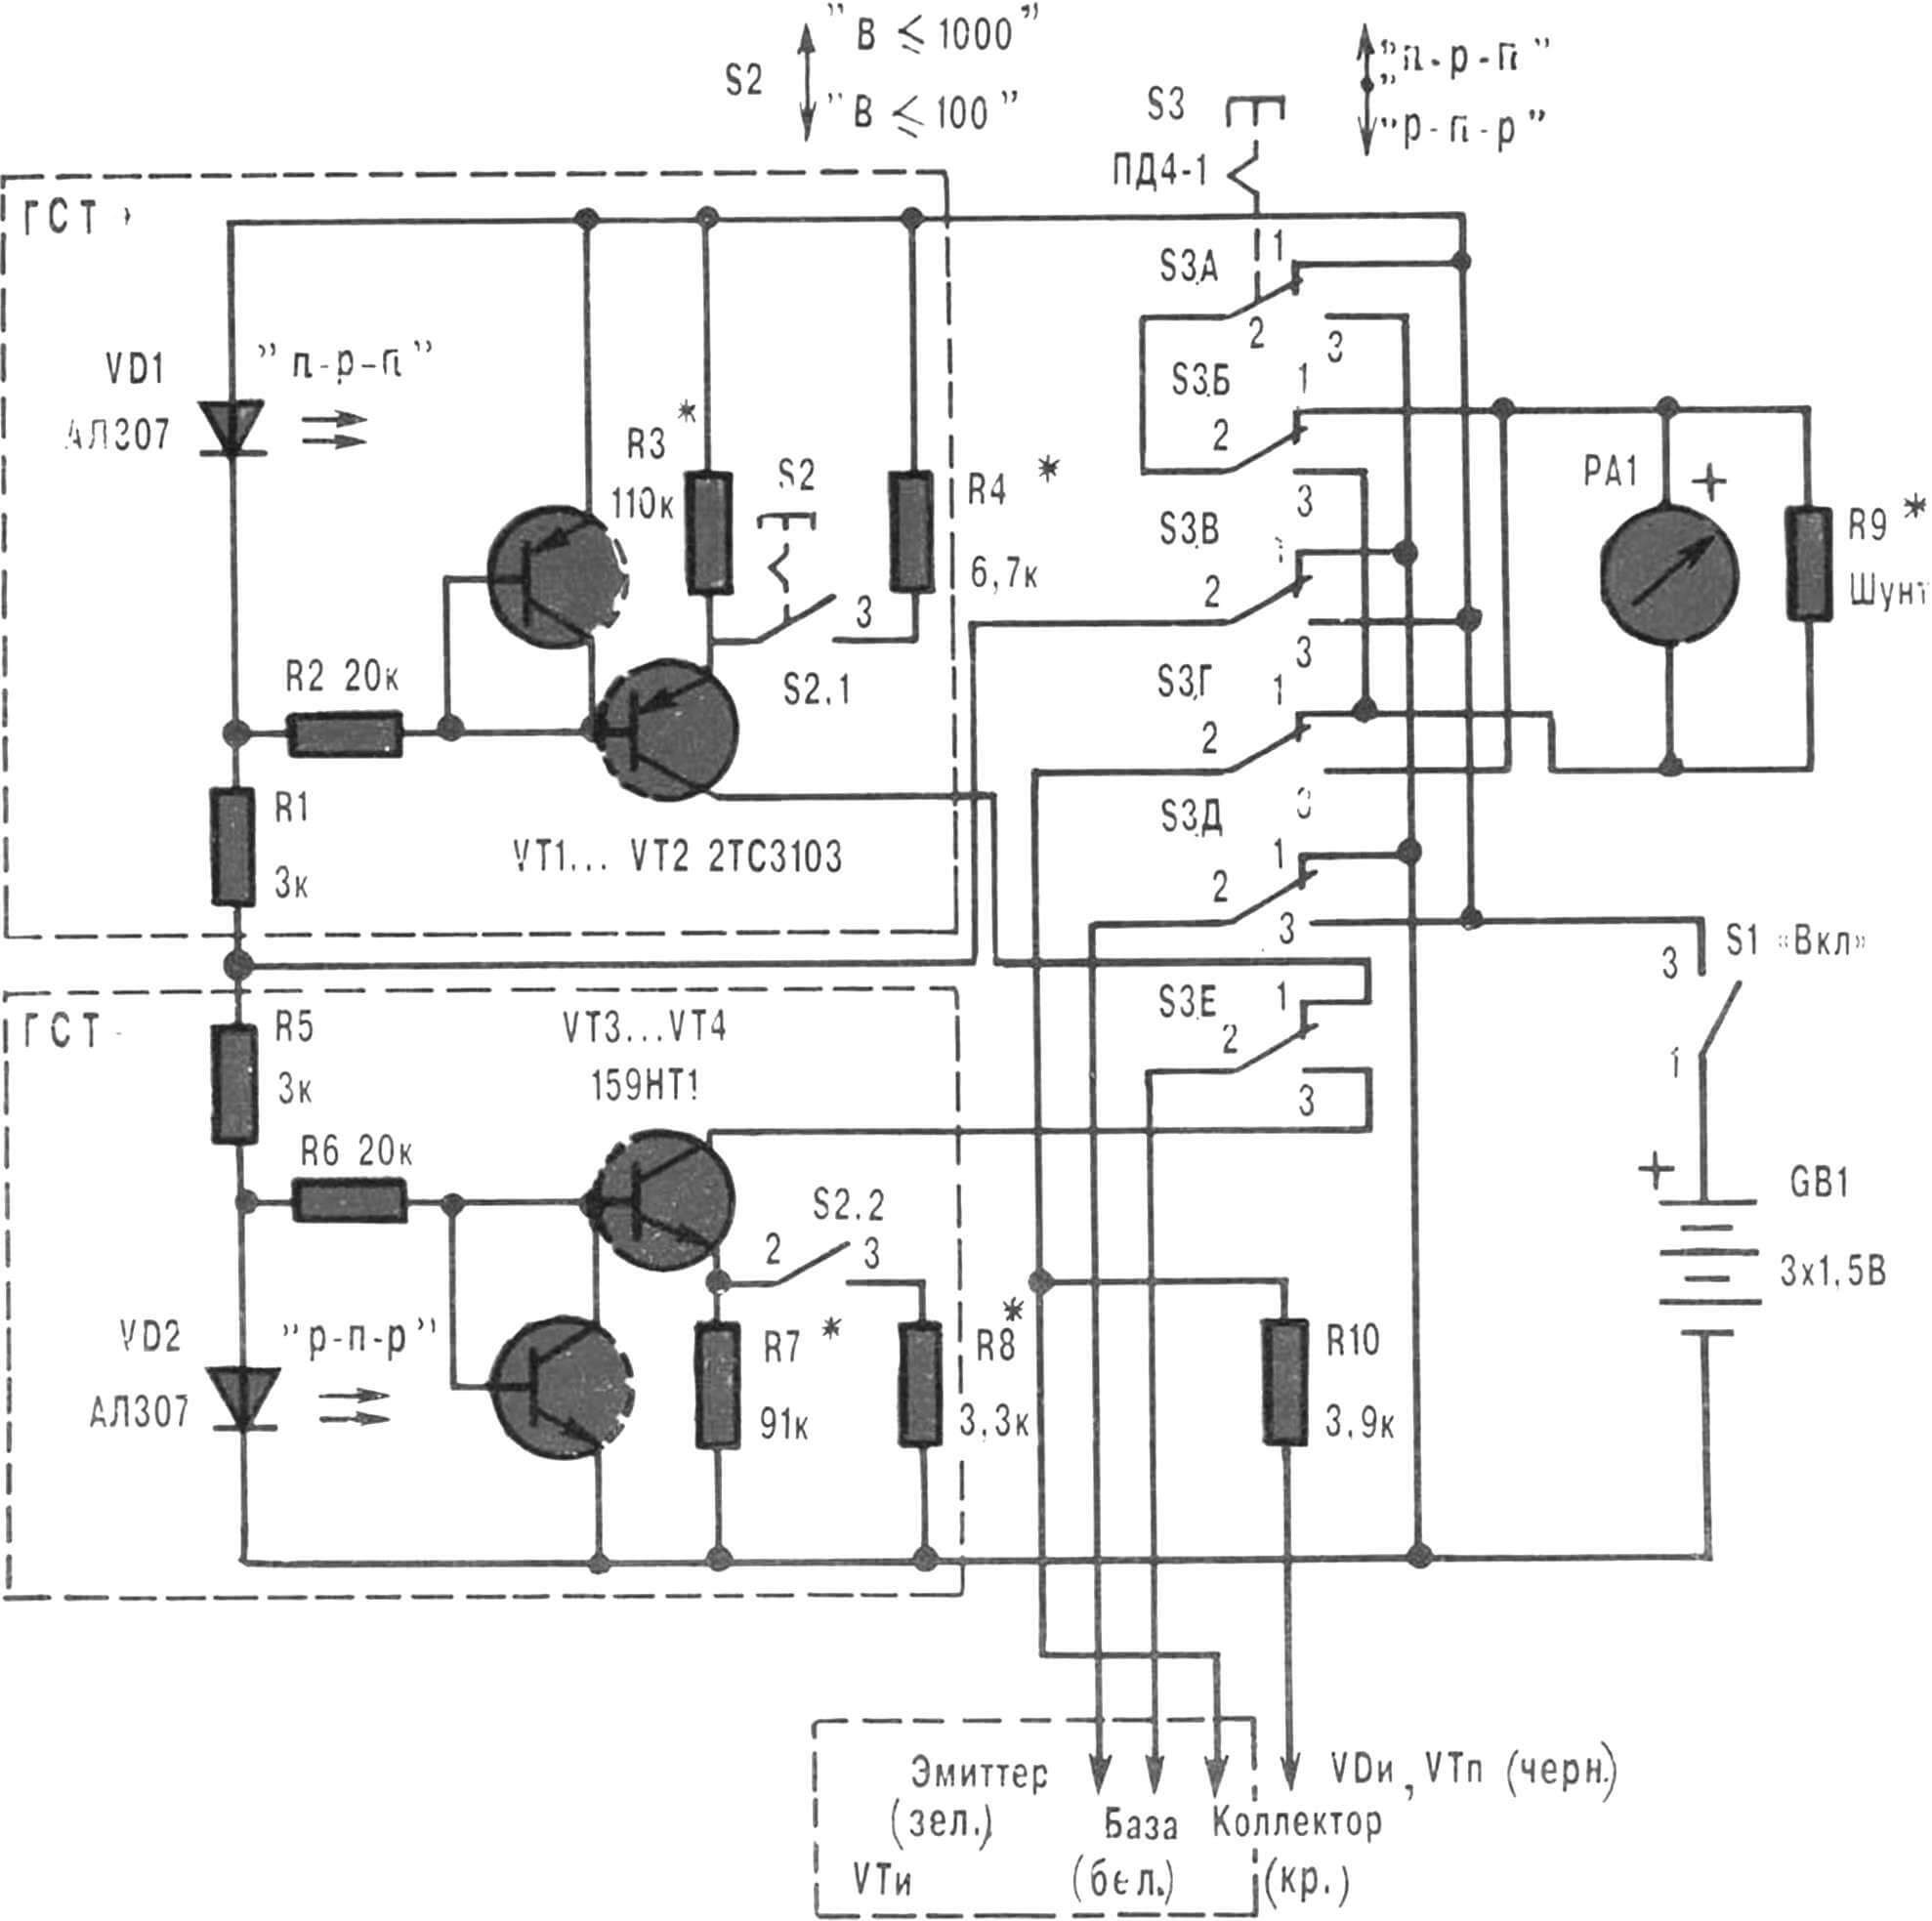 Рис. 1. Принципиальная электрическая схема самодельного прибора для измерения Бета-параметра биполярных транзисторов и «прозвонки» полупроводниковых диодов, «полевиков», светодиодов и других элементов электро- и радиотехники.